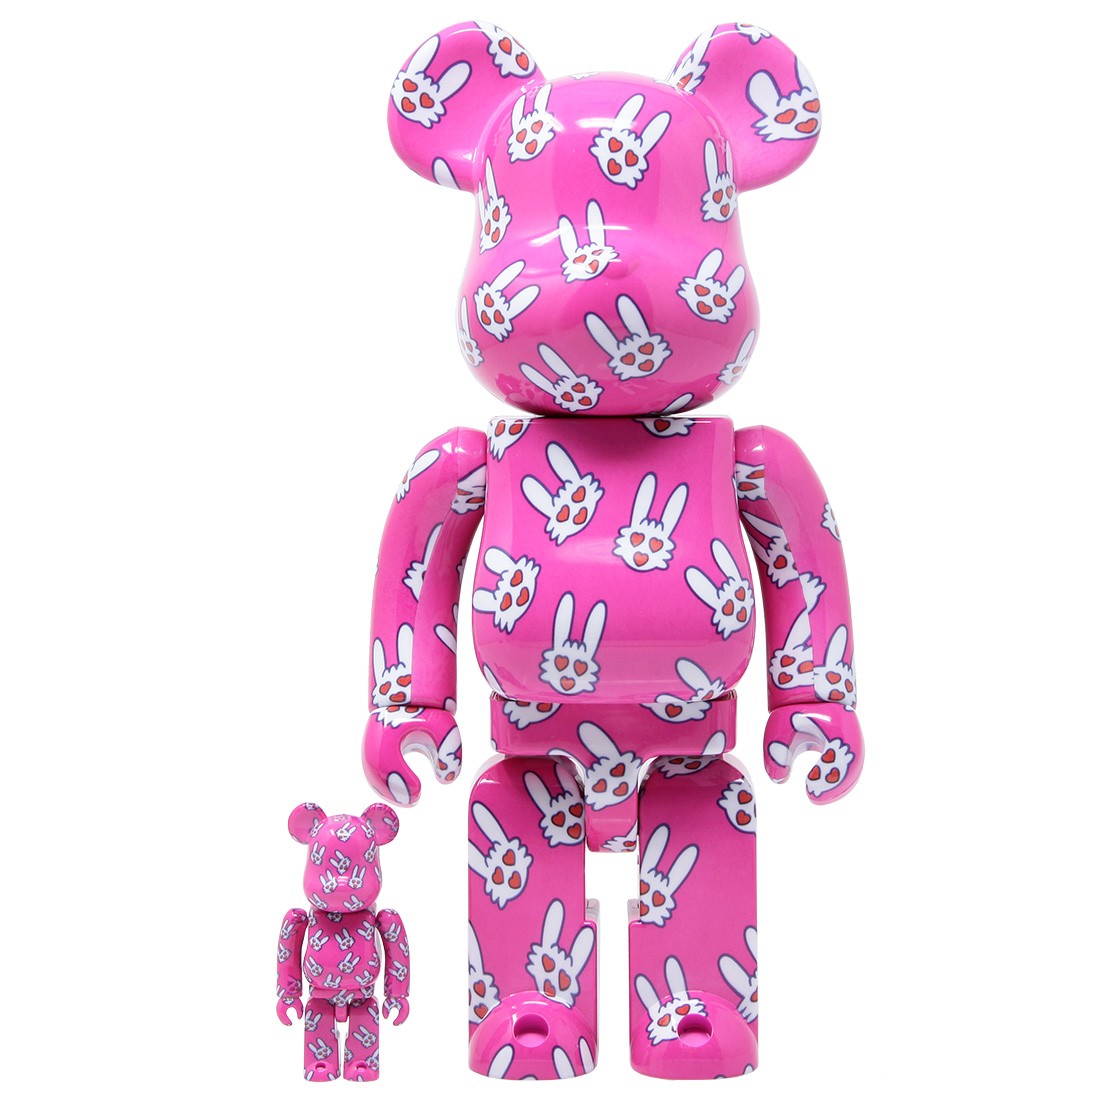 Medicom Hitohatausagi 100% 400% Bearbrick Figure Set pink